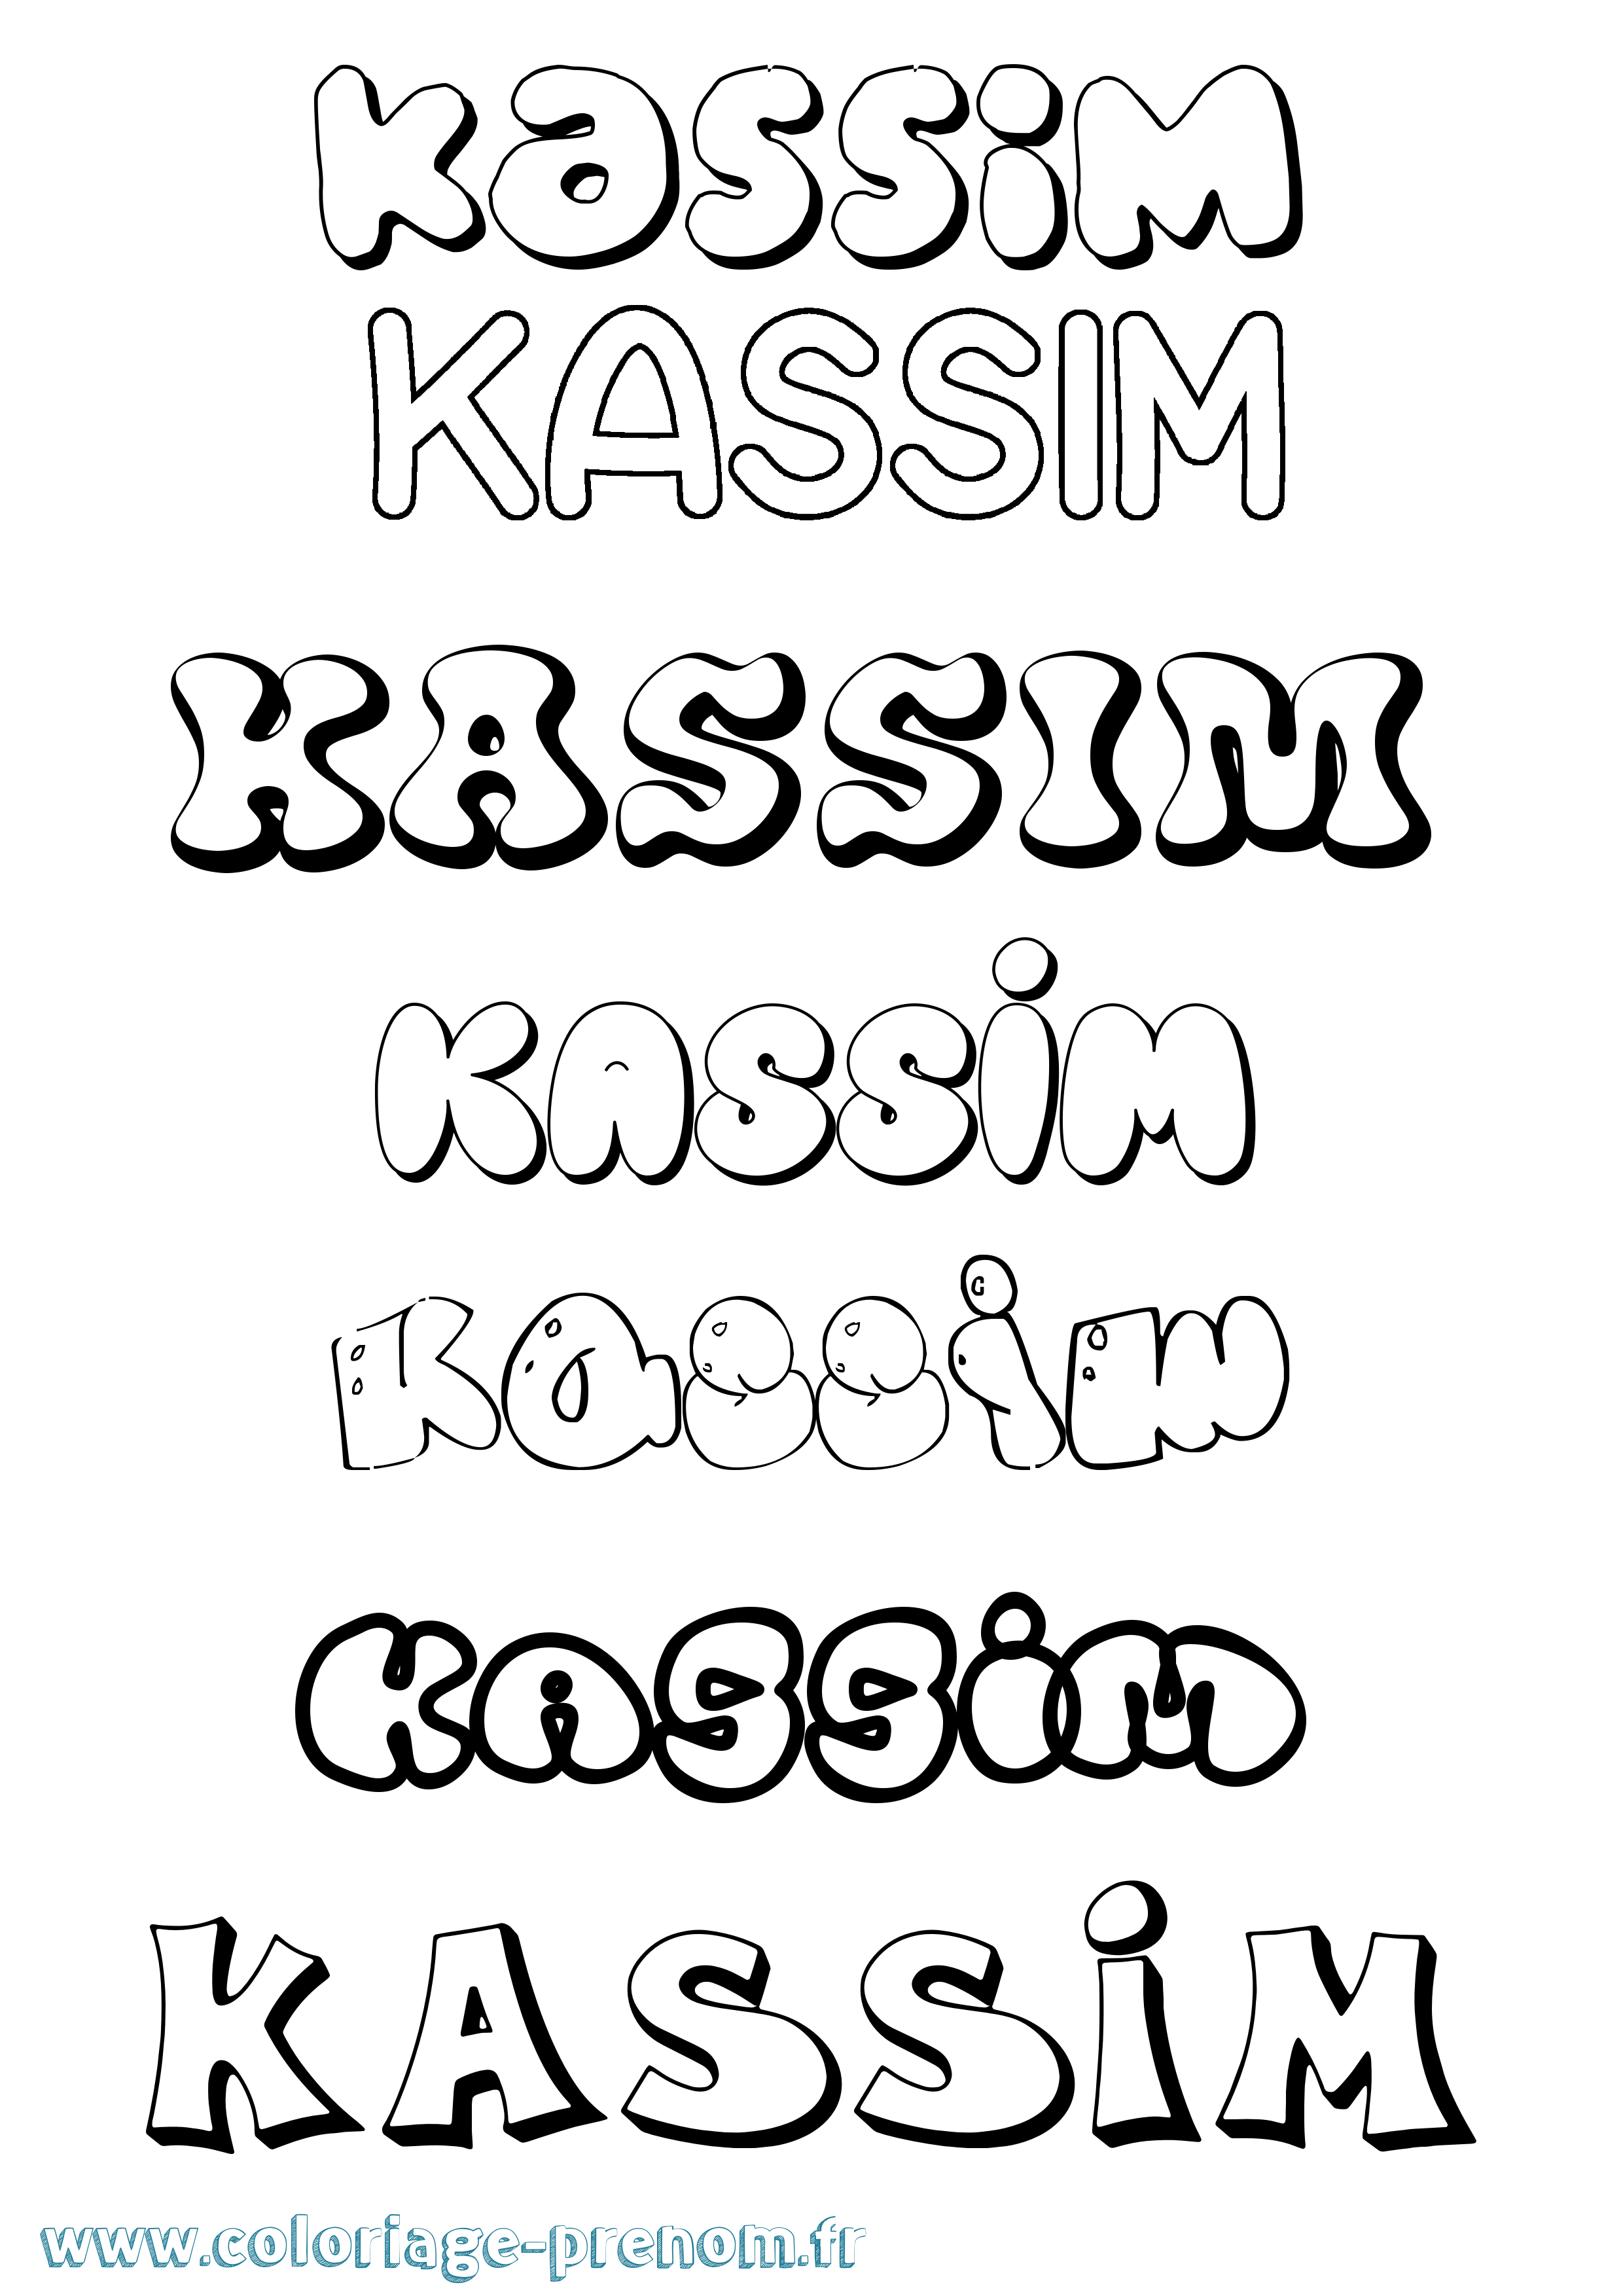 Coloriage prénom Kassim Bubble